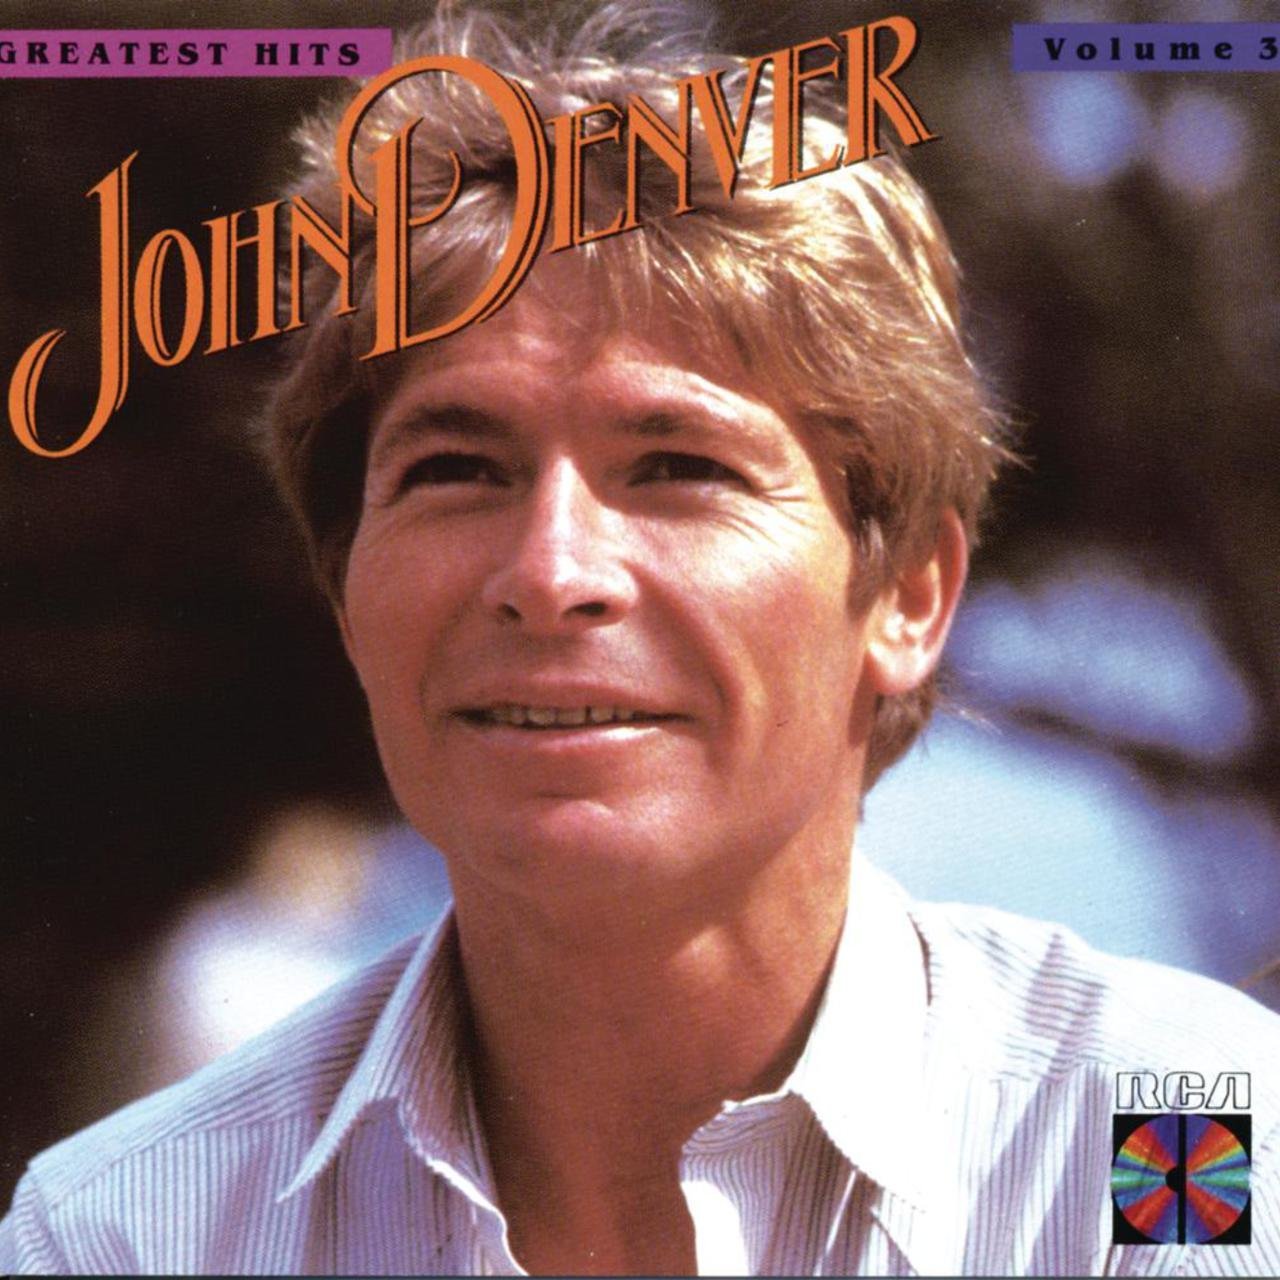 John Denver - John Denver's Greatest Hits, Volume 3 (2019) 24bit FLAC Download